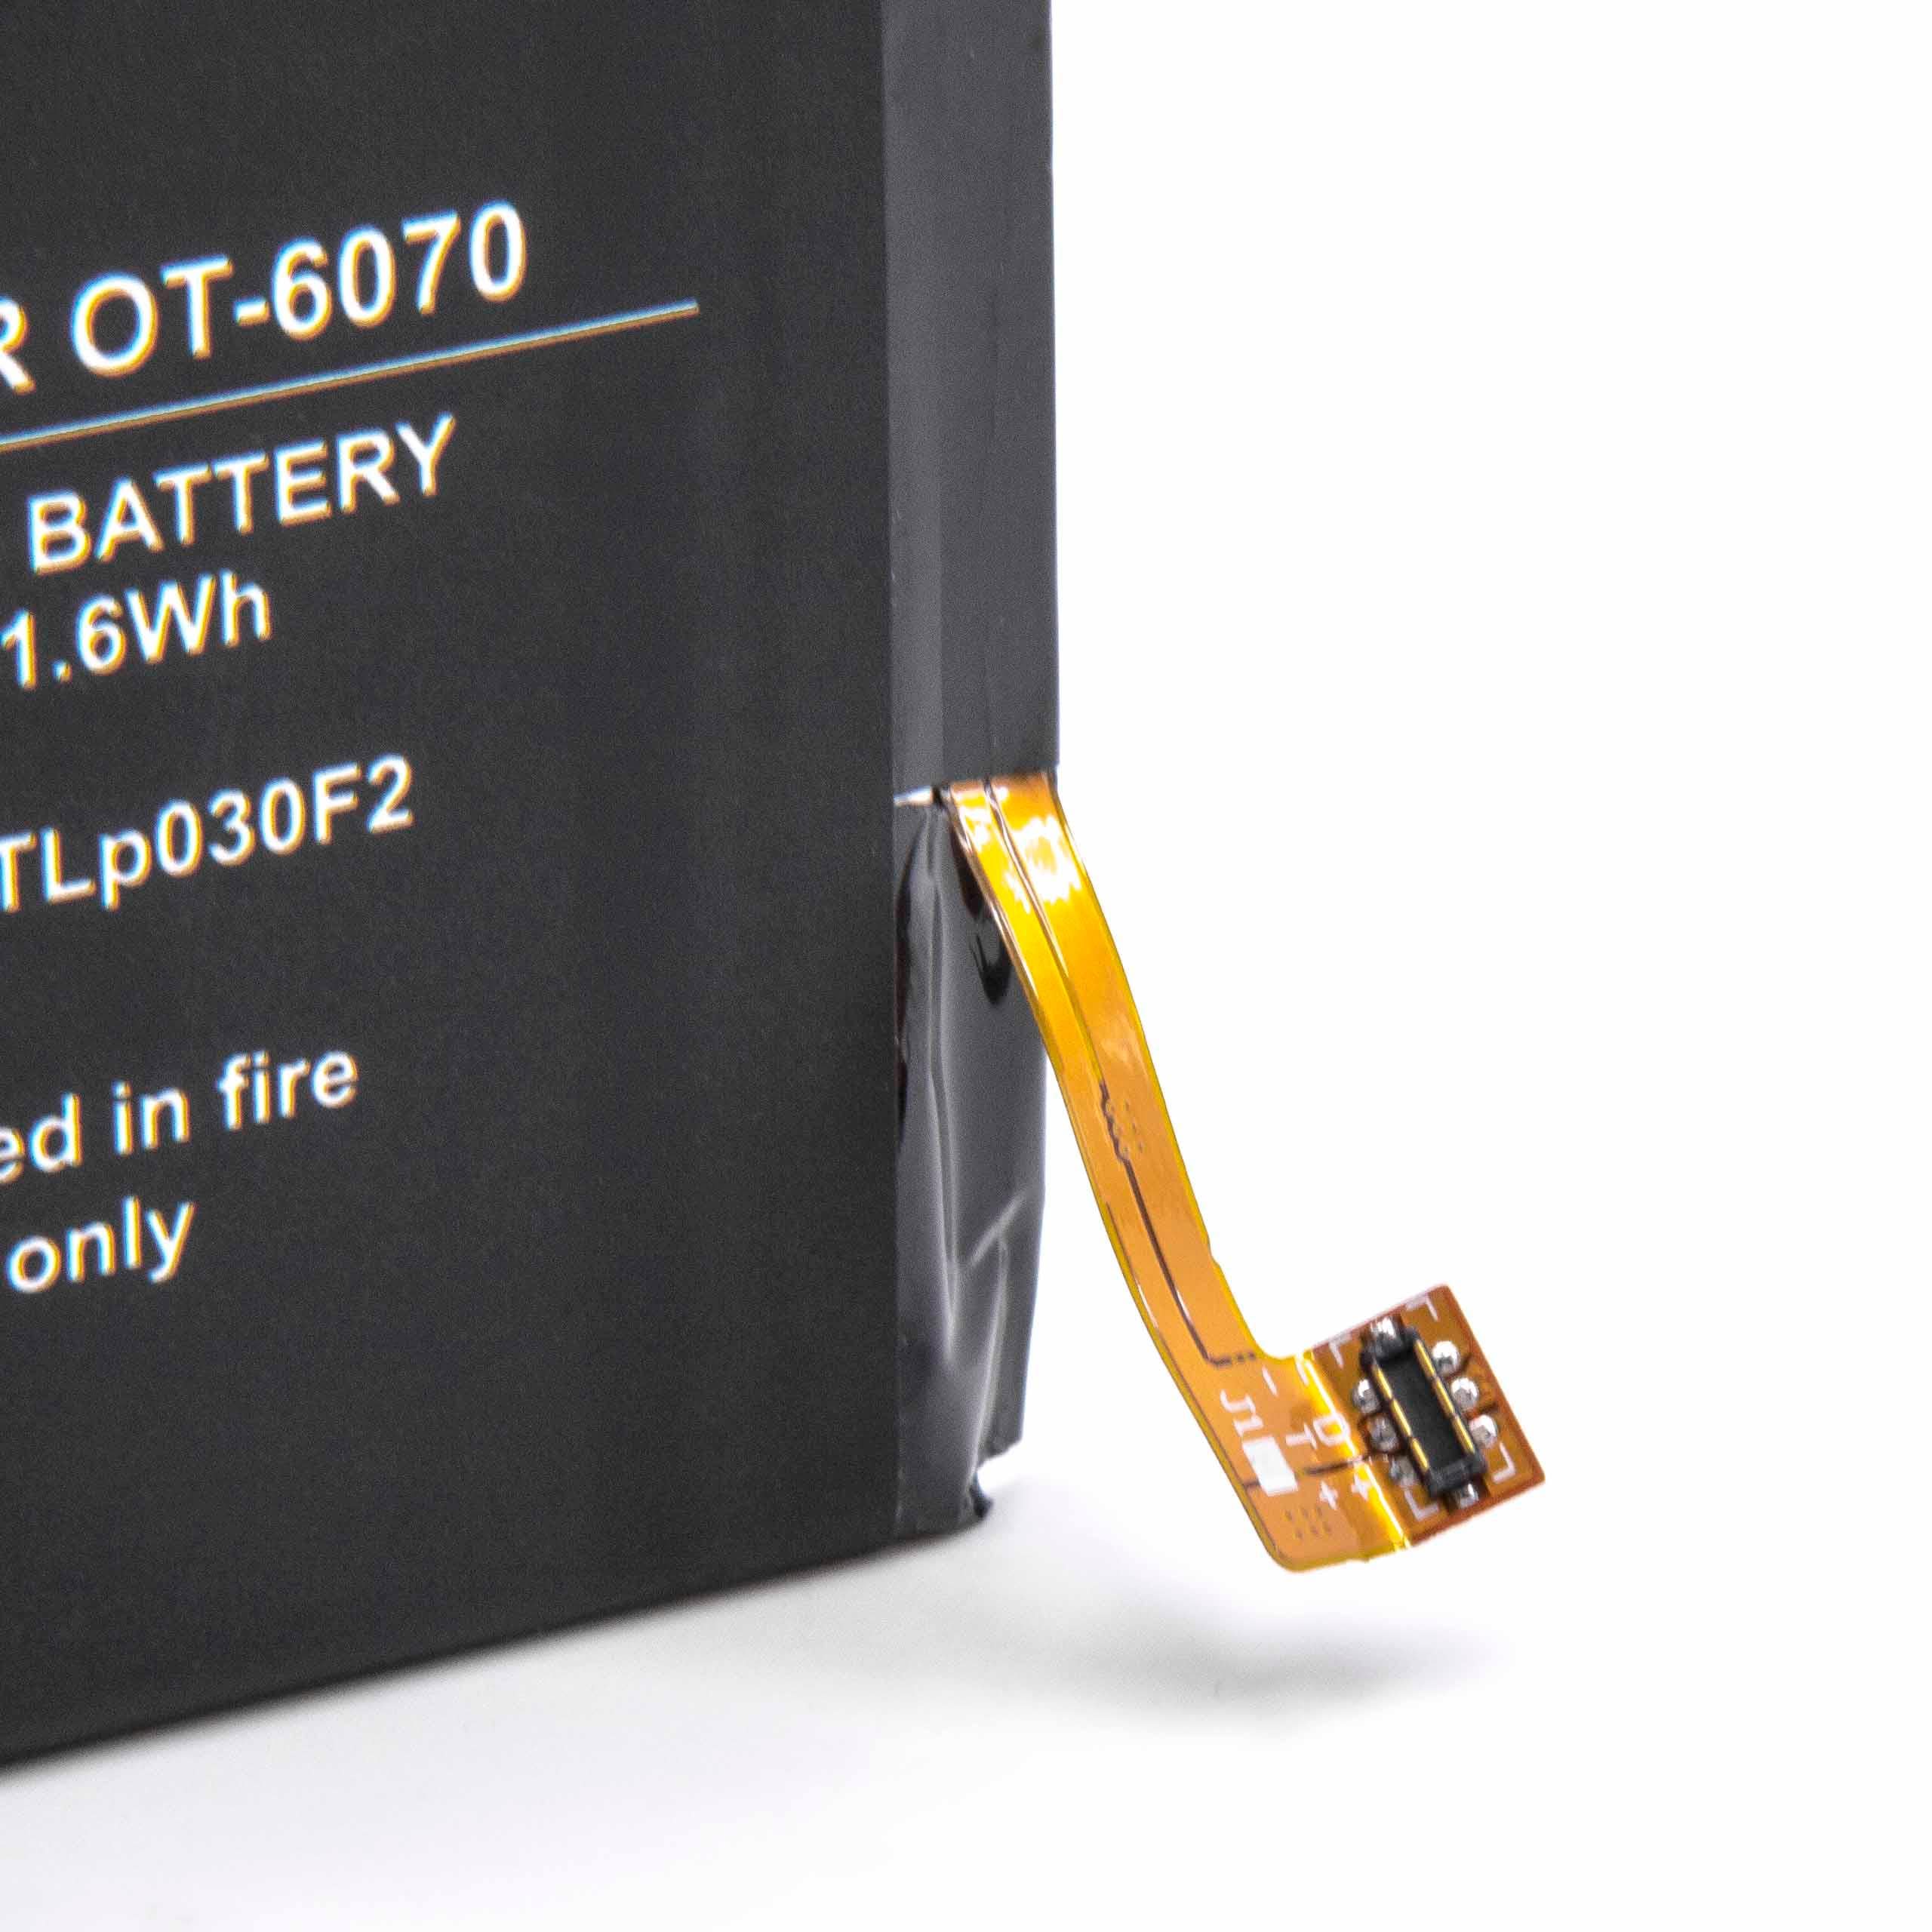 Batterie remplace Alcatel TLp030F1, TLp030F2 pour téléphone portable - 3000mAh, 3,84V, Li-polymère